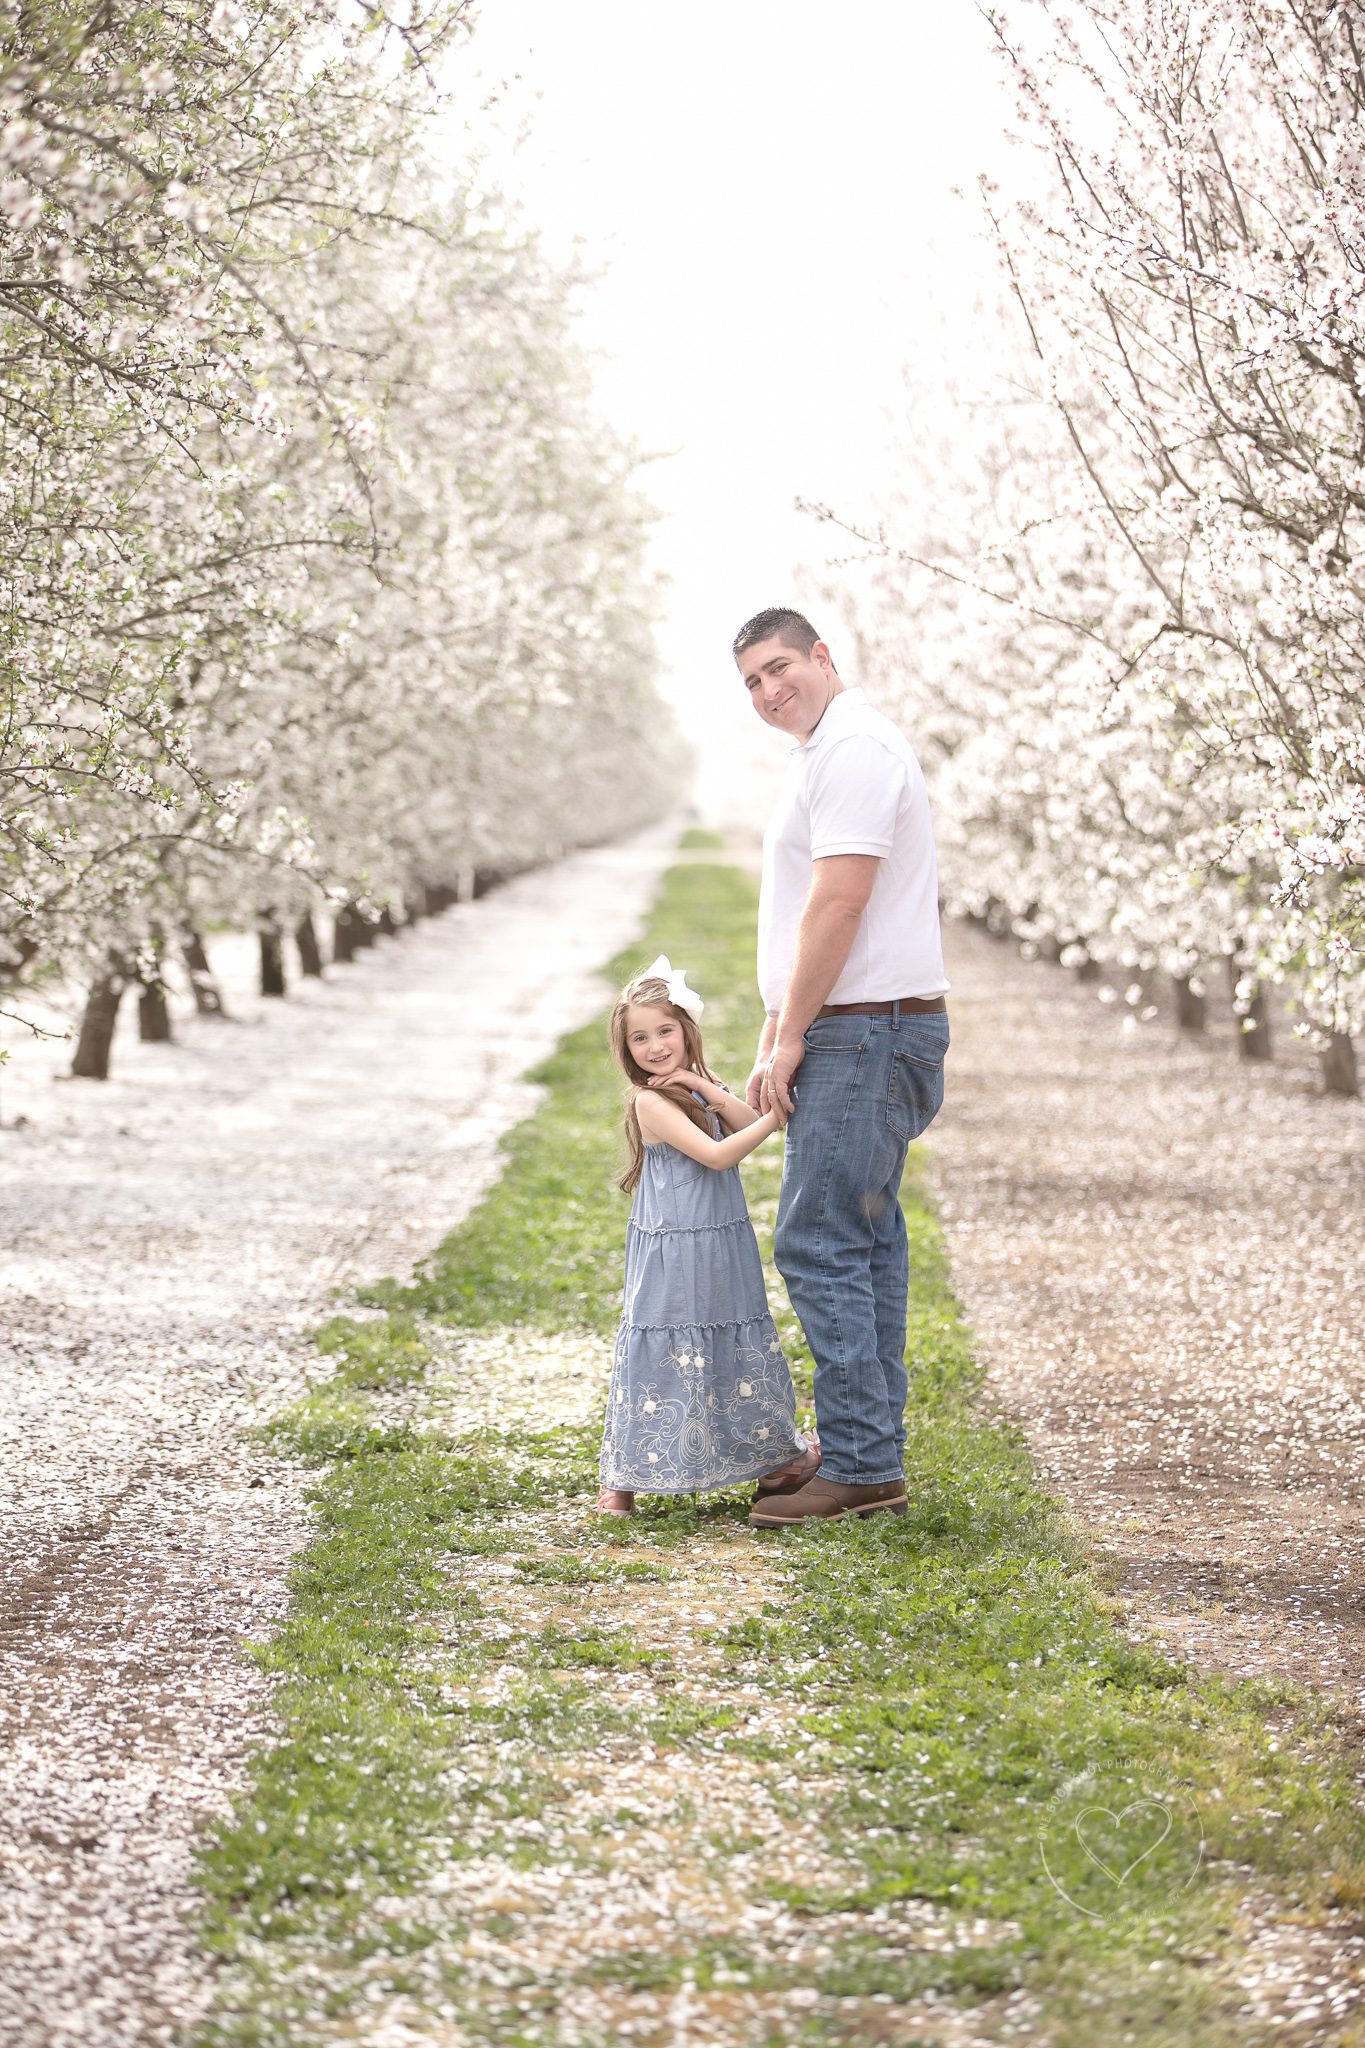 Father daughter, holding hands, blossom photos, blossom trail, fresno, clovis